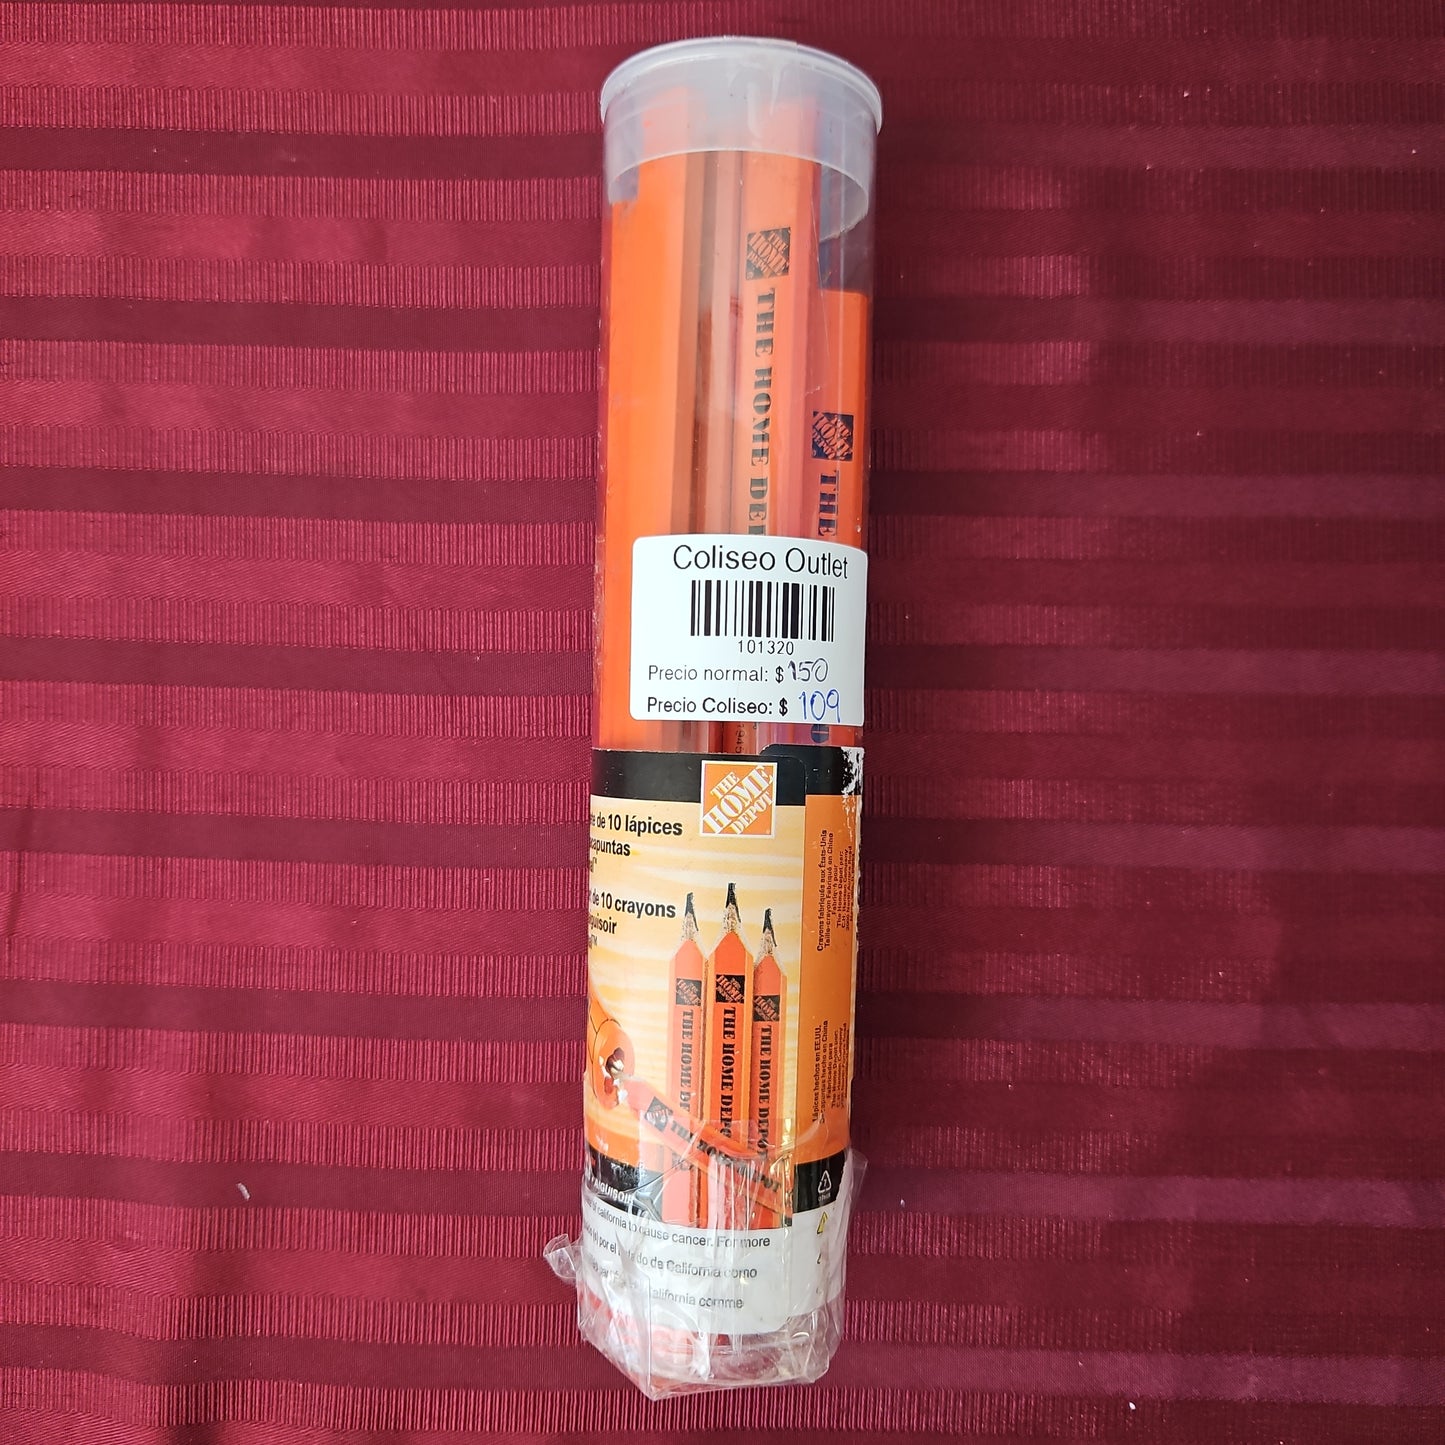 Paquete de 10 lápices con sacapuntas - The Home Depot (Nuevo, empaque abierto)